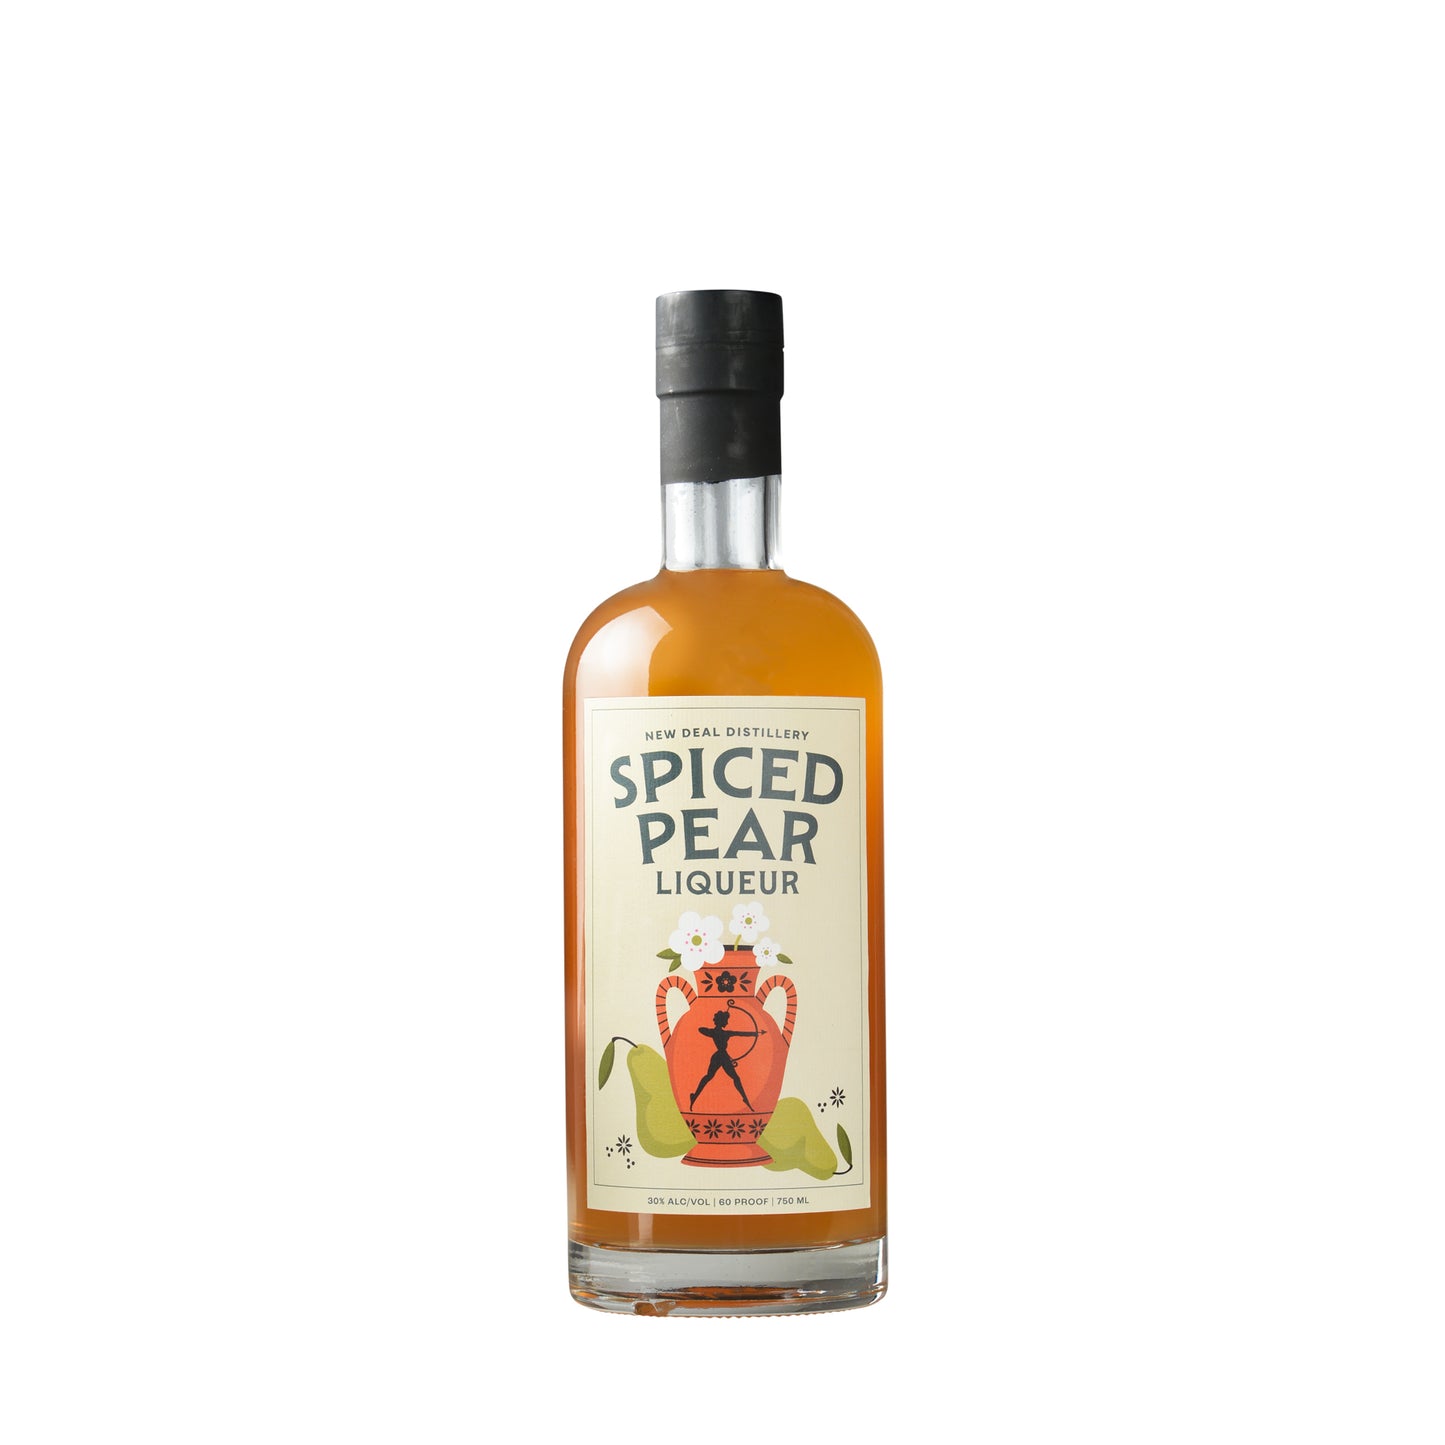 New Deal Spiced Pear Liqueur